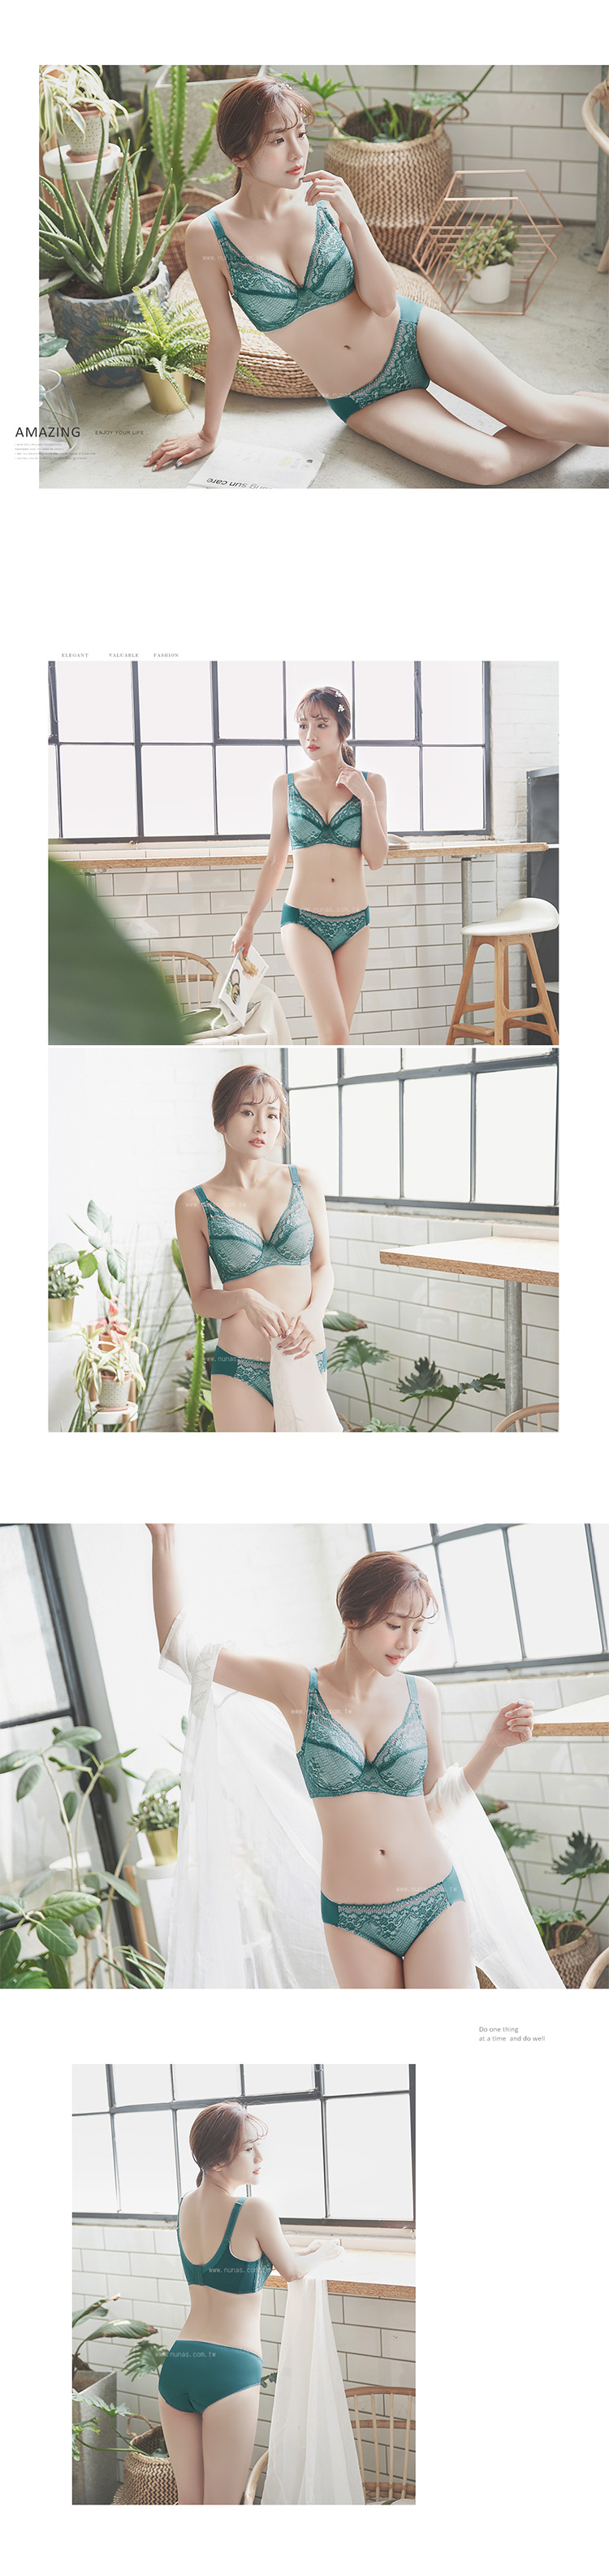 【露娜斯】維納粉典。M-XL舒適女三角褲【綠】台灣製P8816